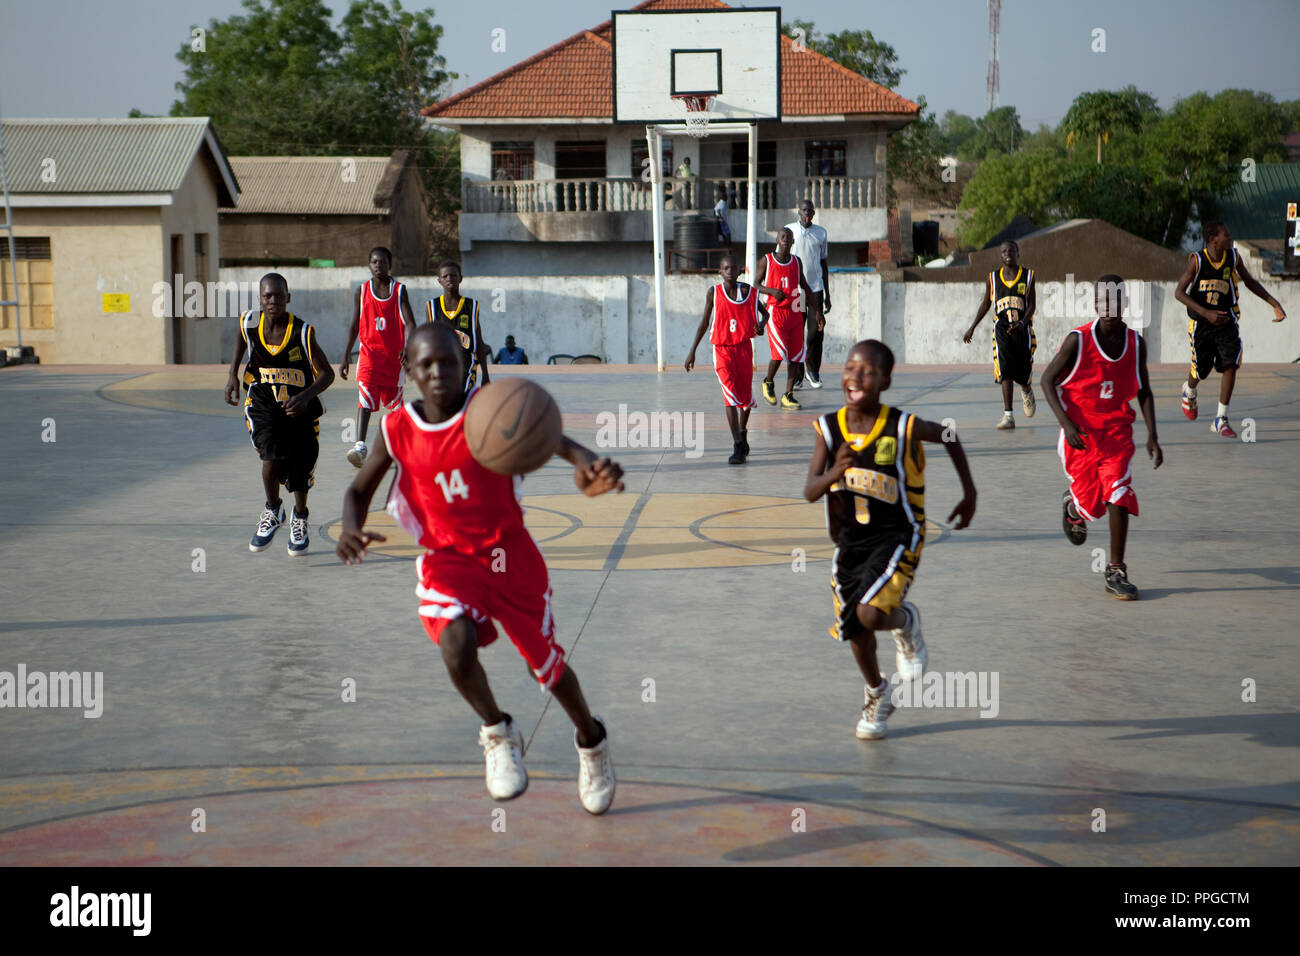 Enero 7, 2011 - Juba, Sudán del sur de Sudán - los jugadores de baloncesto competir en un match en el estadio de baloncesto de Juba en Nimra Talata, dos días antes del inicio de un voto histórico sobre la independencia después de cinco décadas de conflicto entre el norte y el sur de Sudán. Si hay una cosa que el sur de Sudán es famoso en el mundo exterior, es la super estrellas altas con que ha salpicado la NBA y ahora, como nación atrae, es el baloncesto que está buscando para hacer un nombre en las competiciones deportivas internacionales. Crédito de la foto: Benedicte Desrus Foto de stock